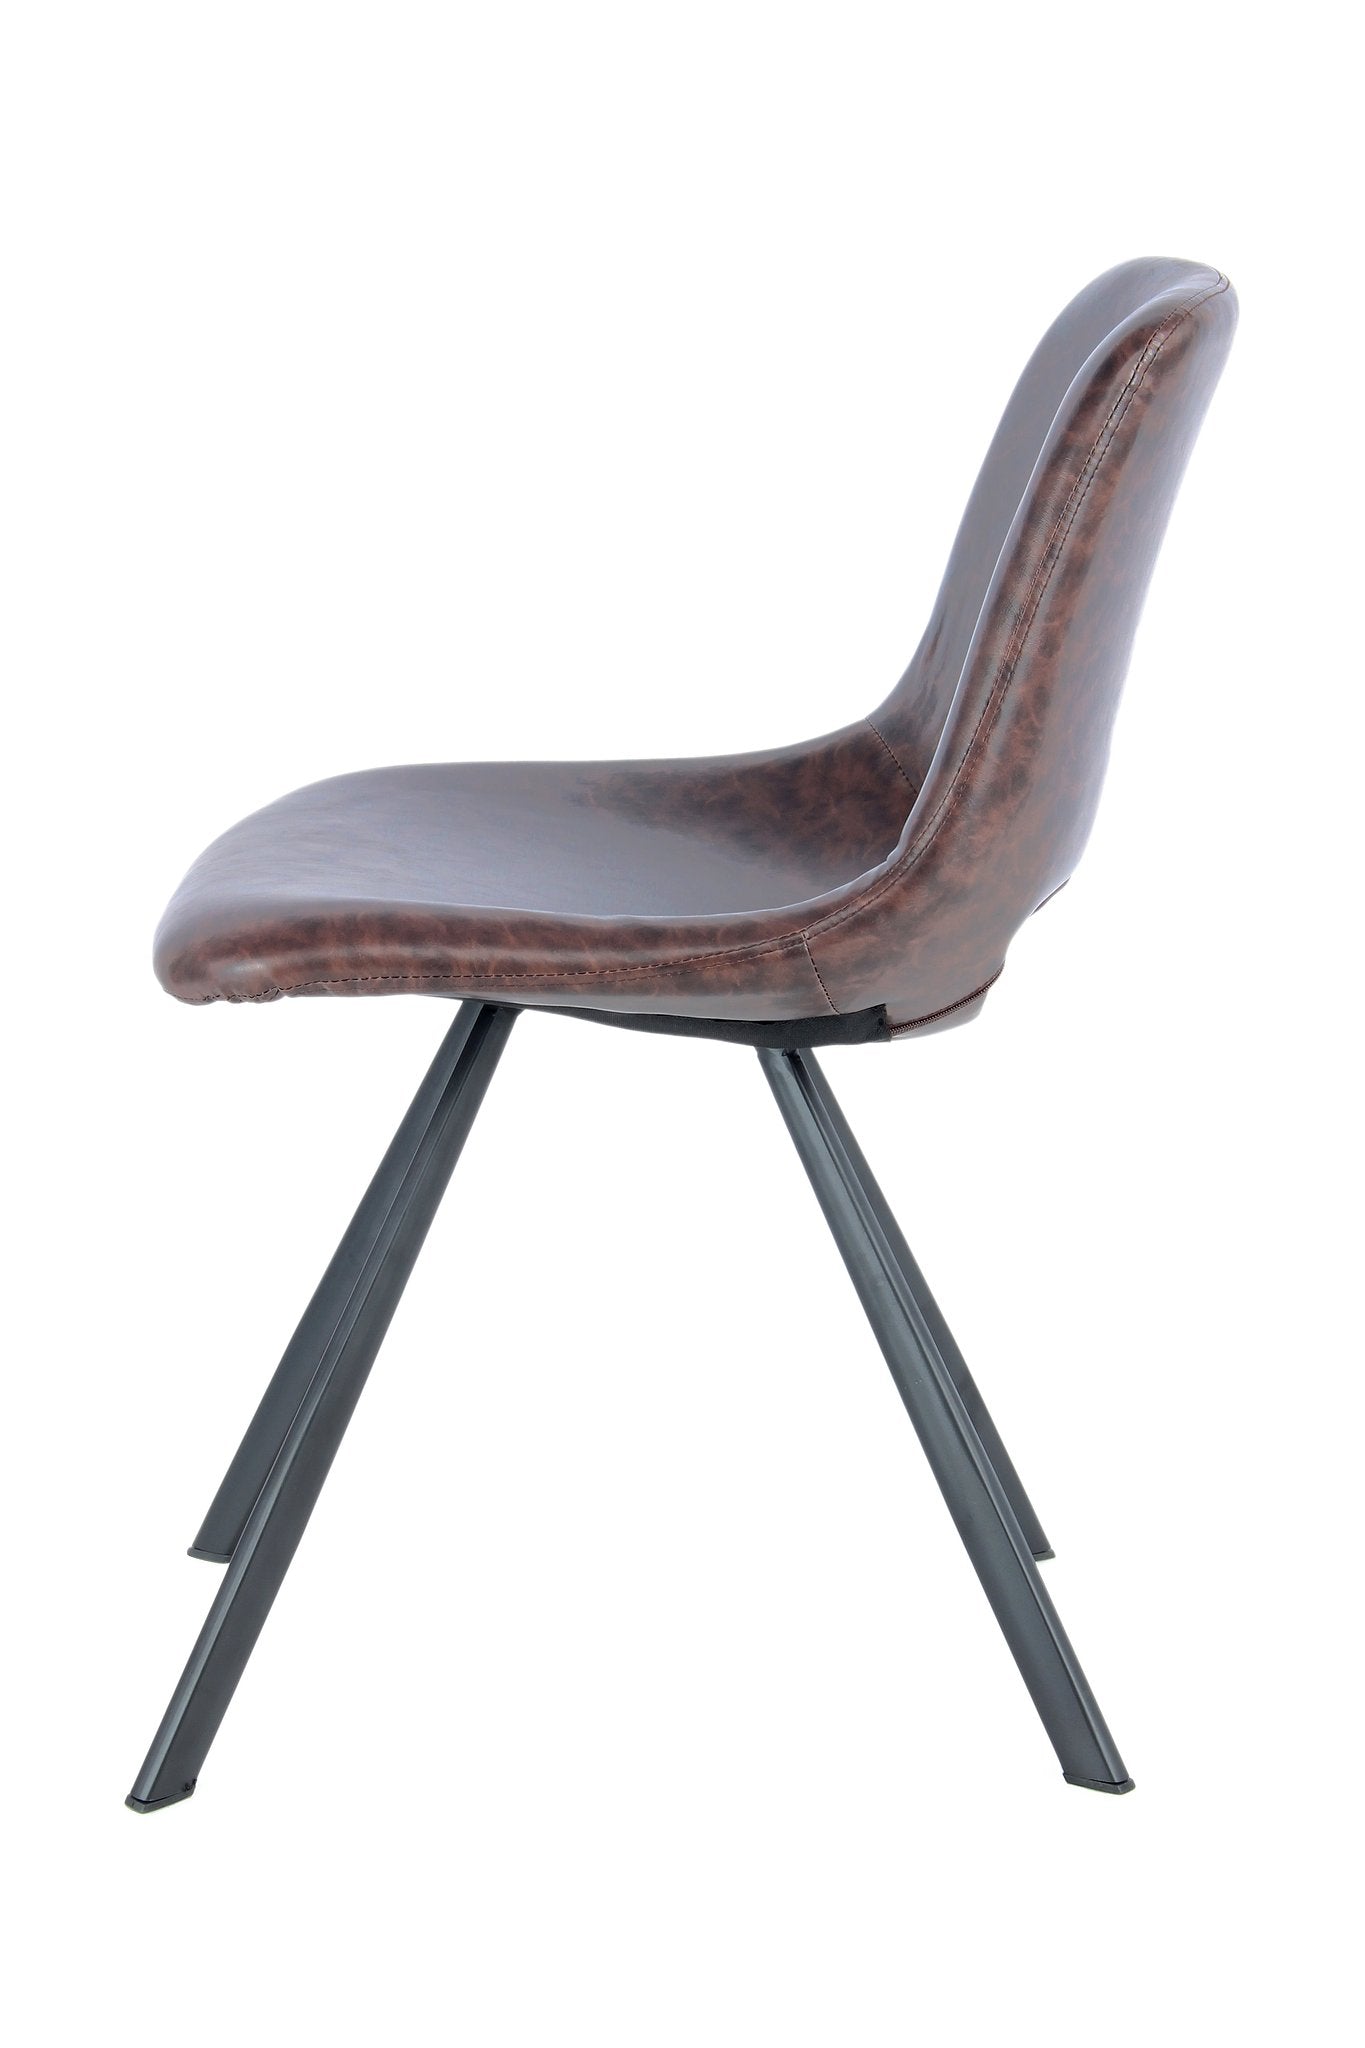 Lalee Avenue Chair Josephine 325 set of 2 (LxWxH) 57 x 47.5 x 77 cm